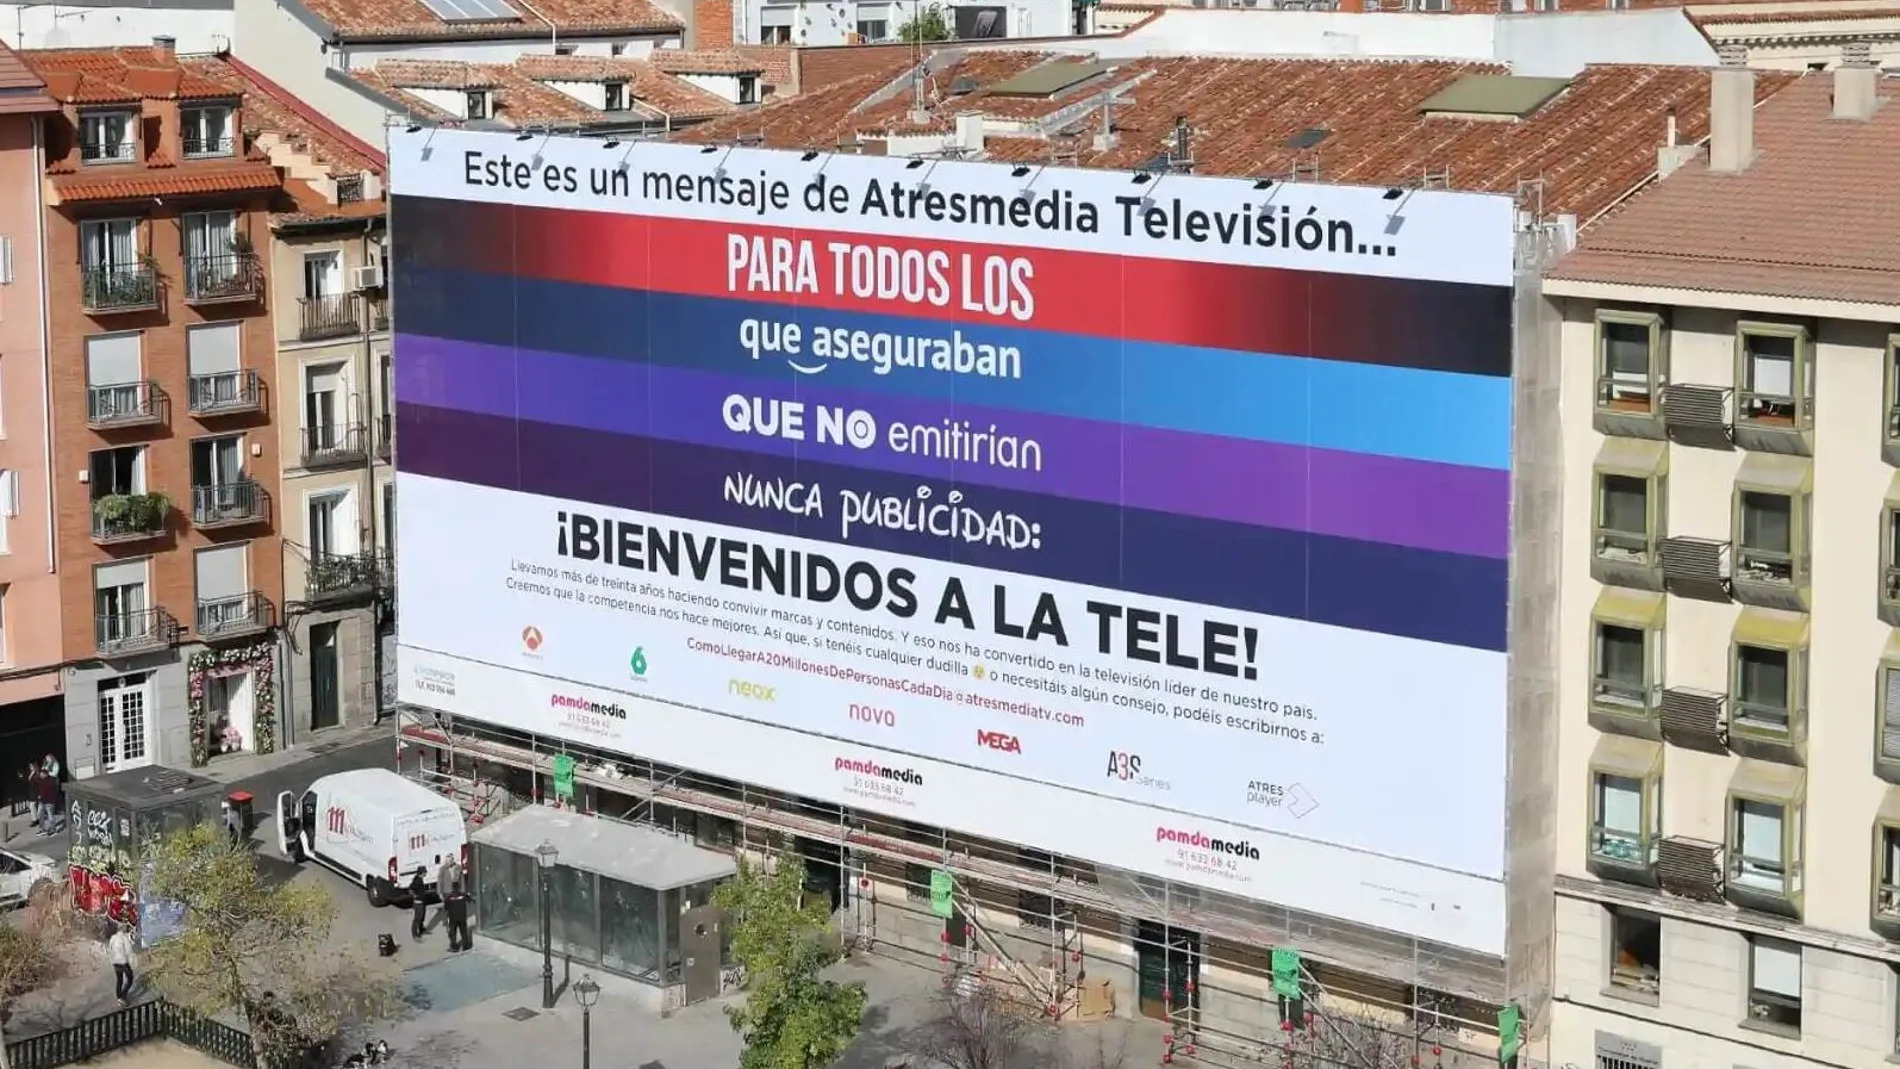 Espectacular de Atresmedia Televisión en Madrid